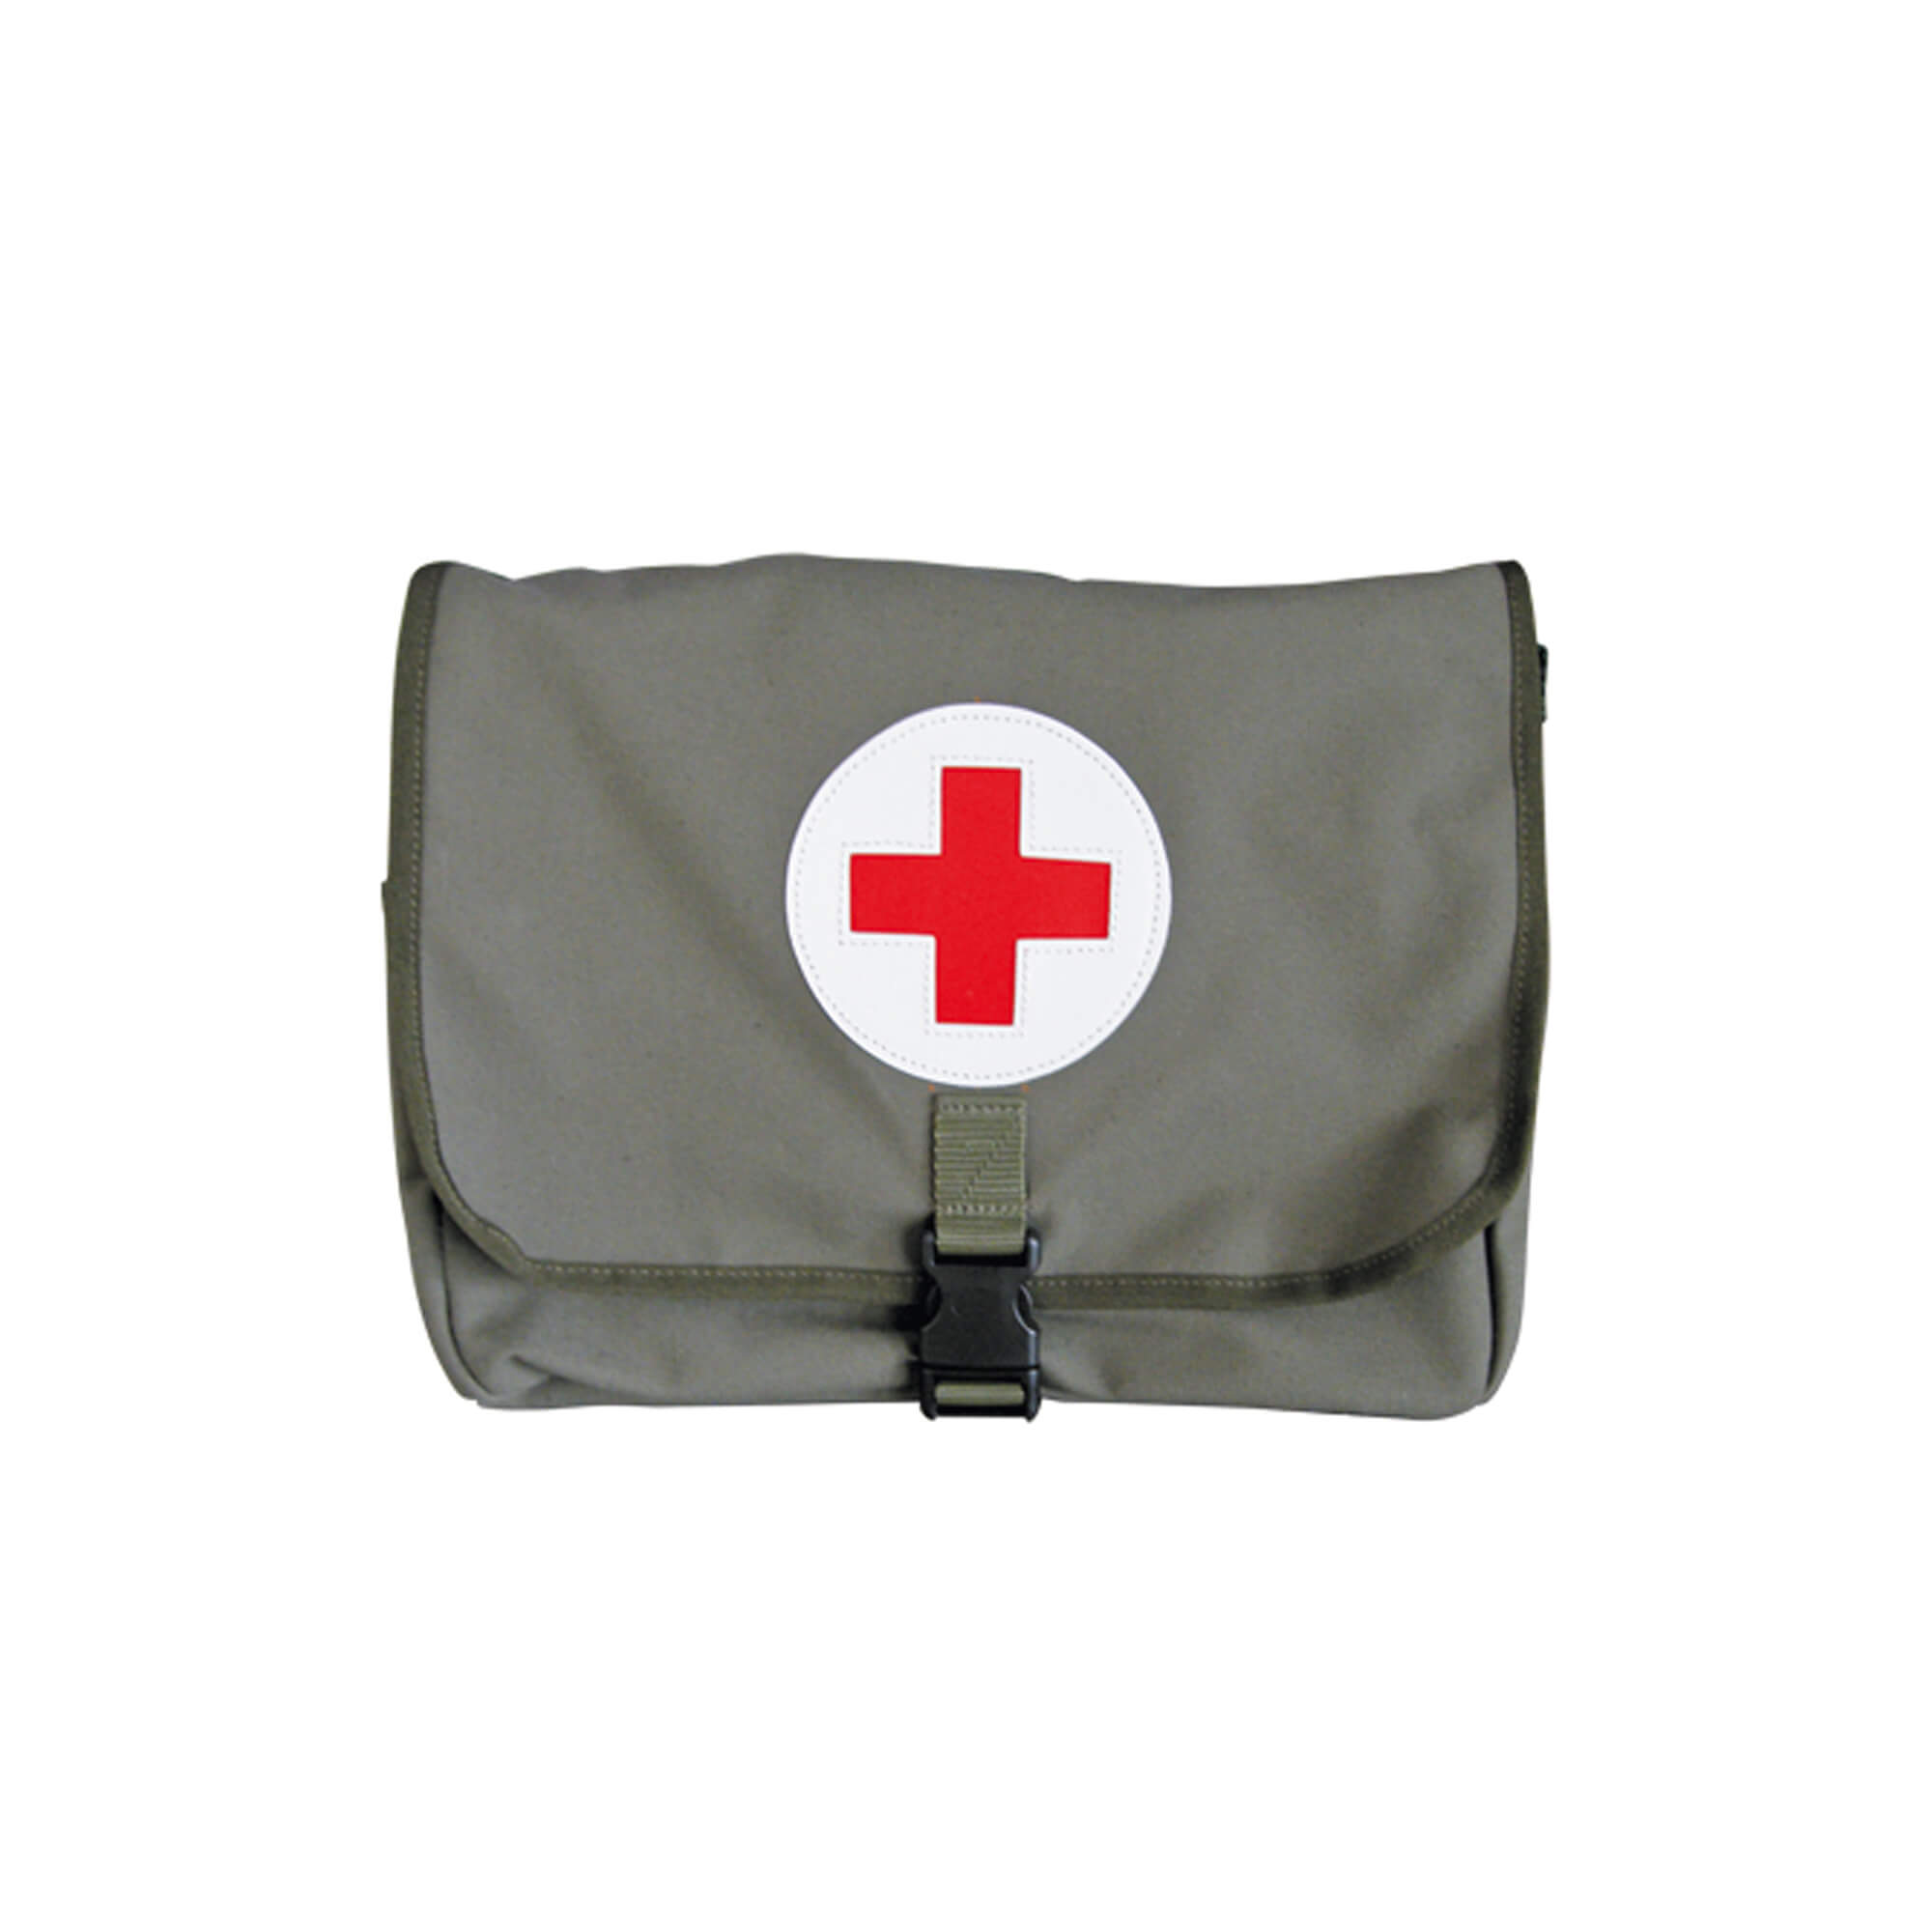 First Aid Bag